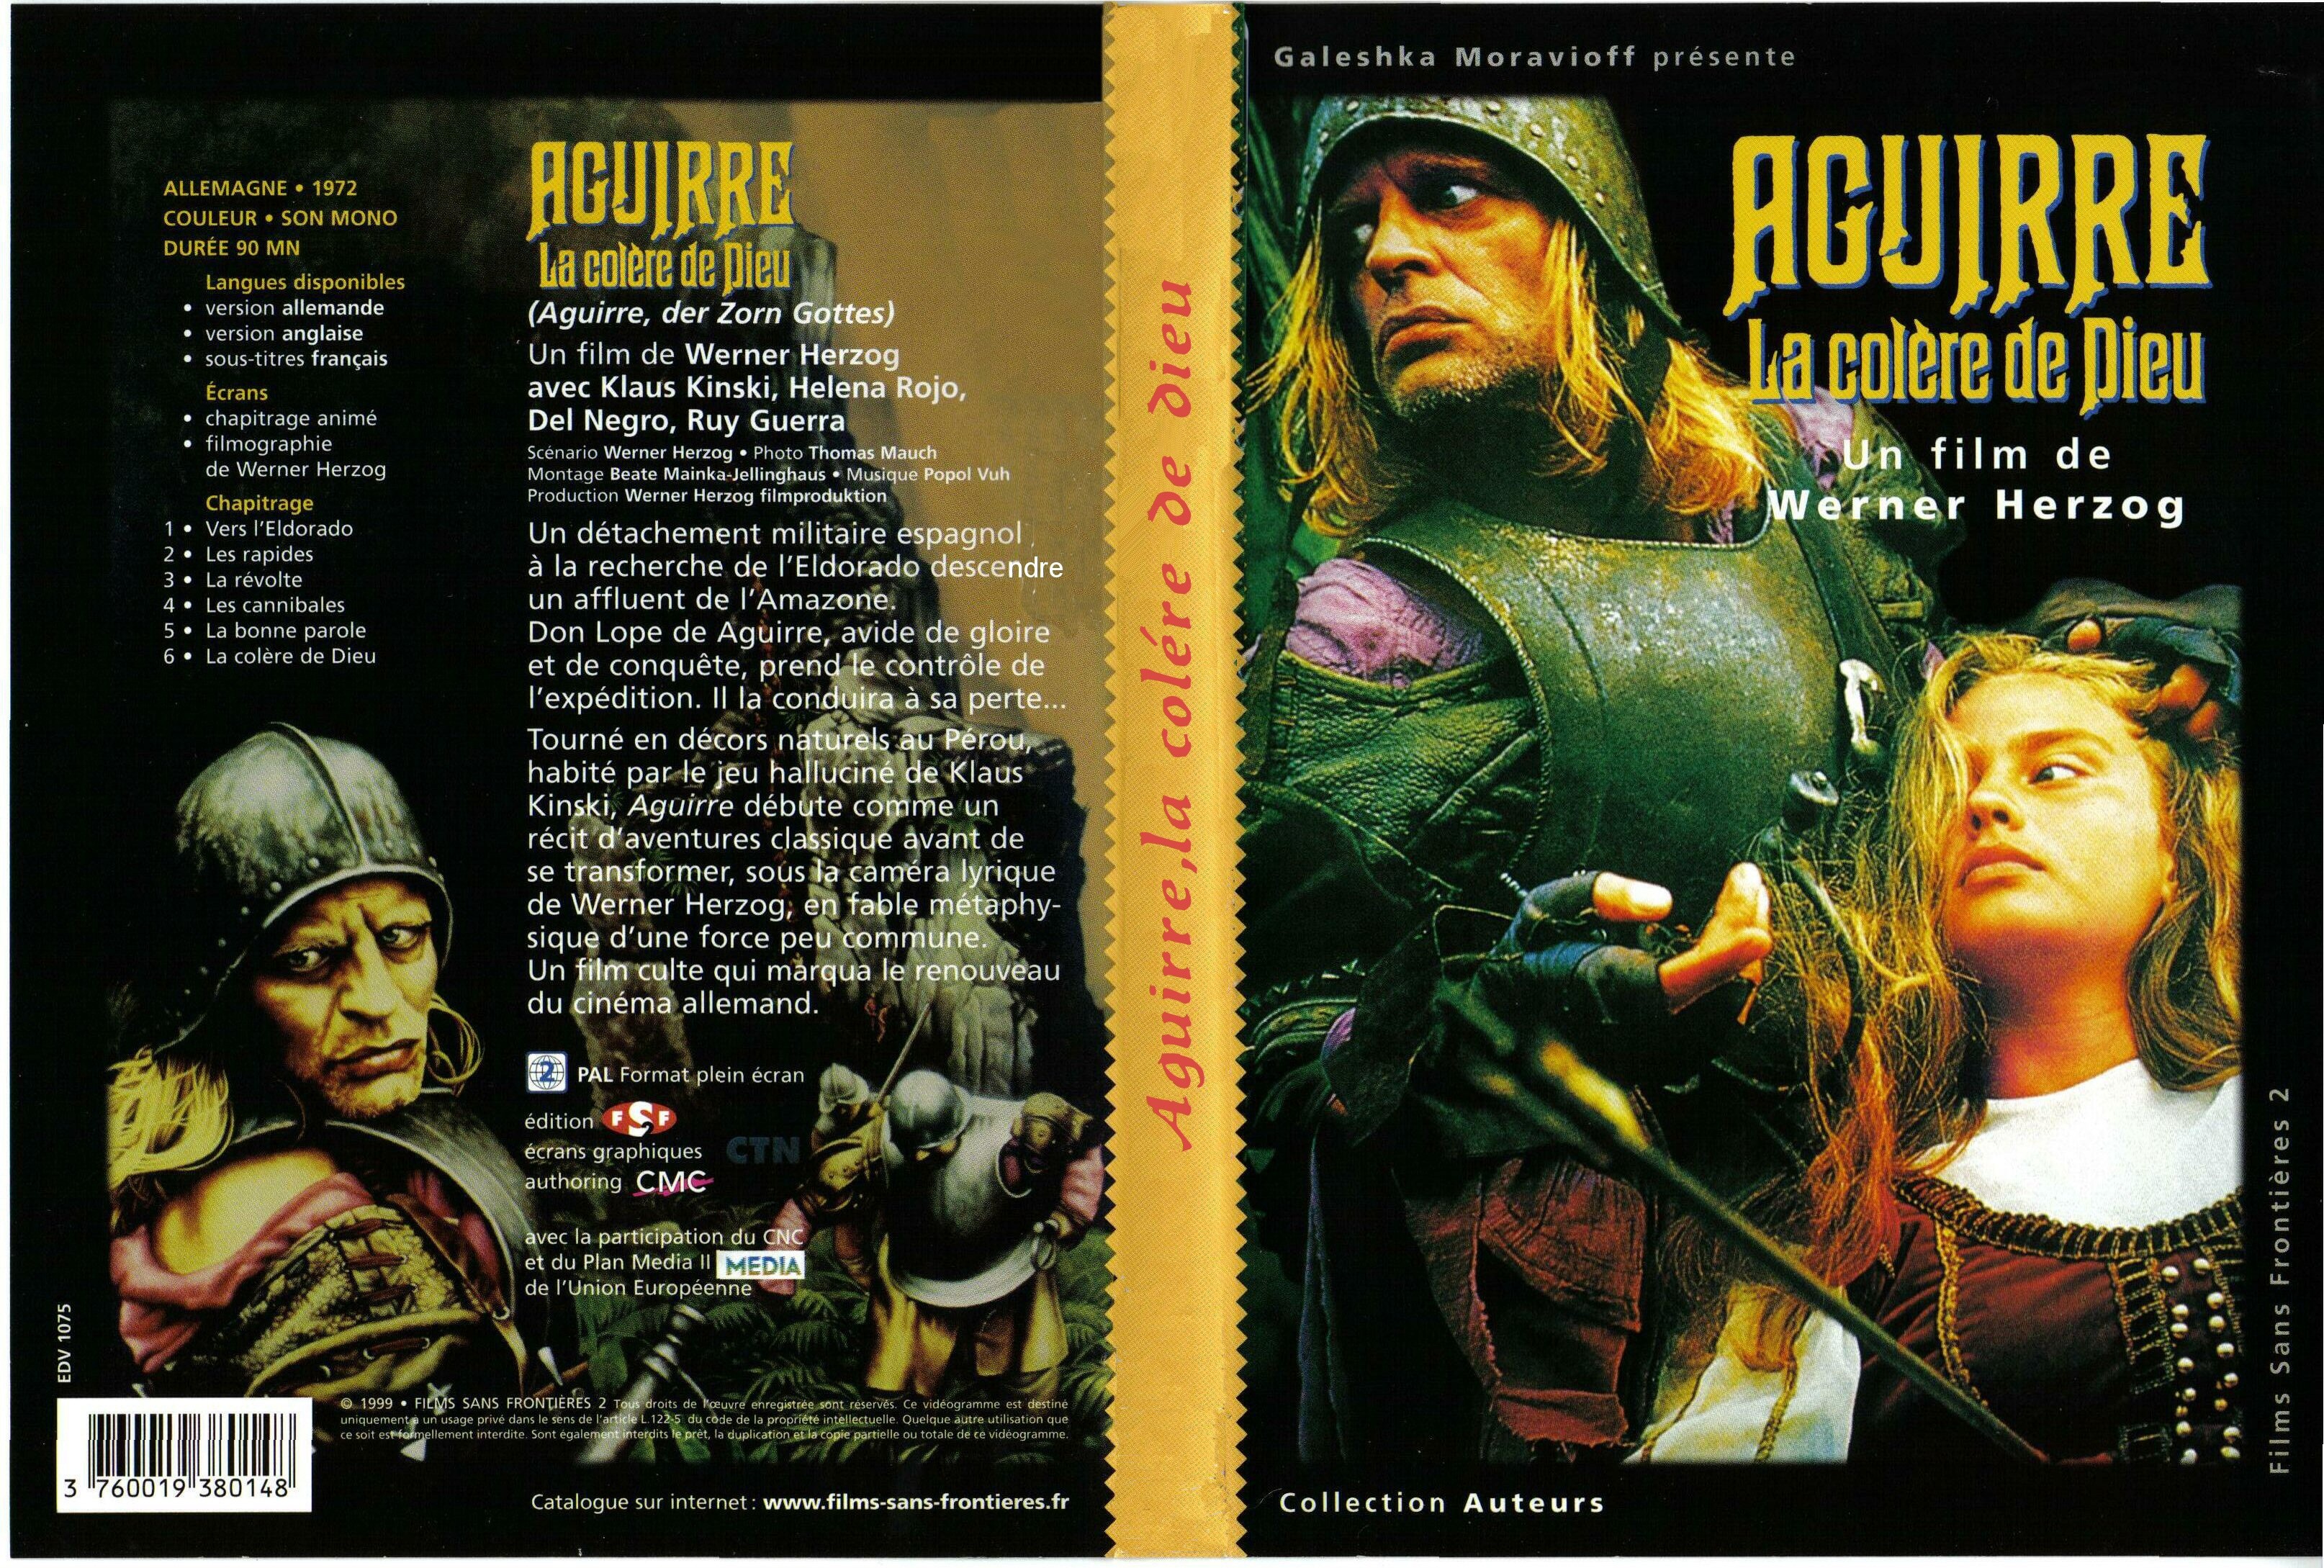 Jaquette DVD Aguirre la colere de dieu